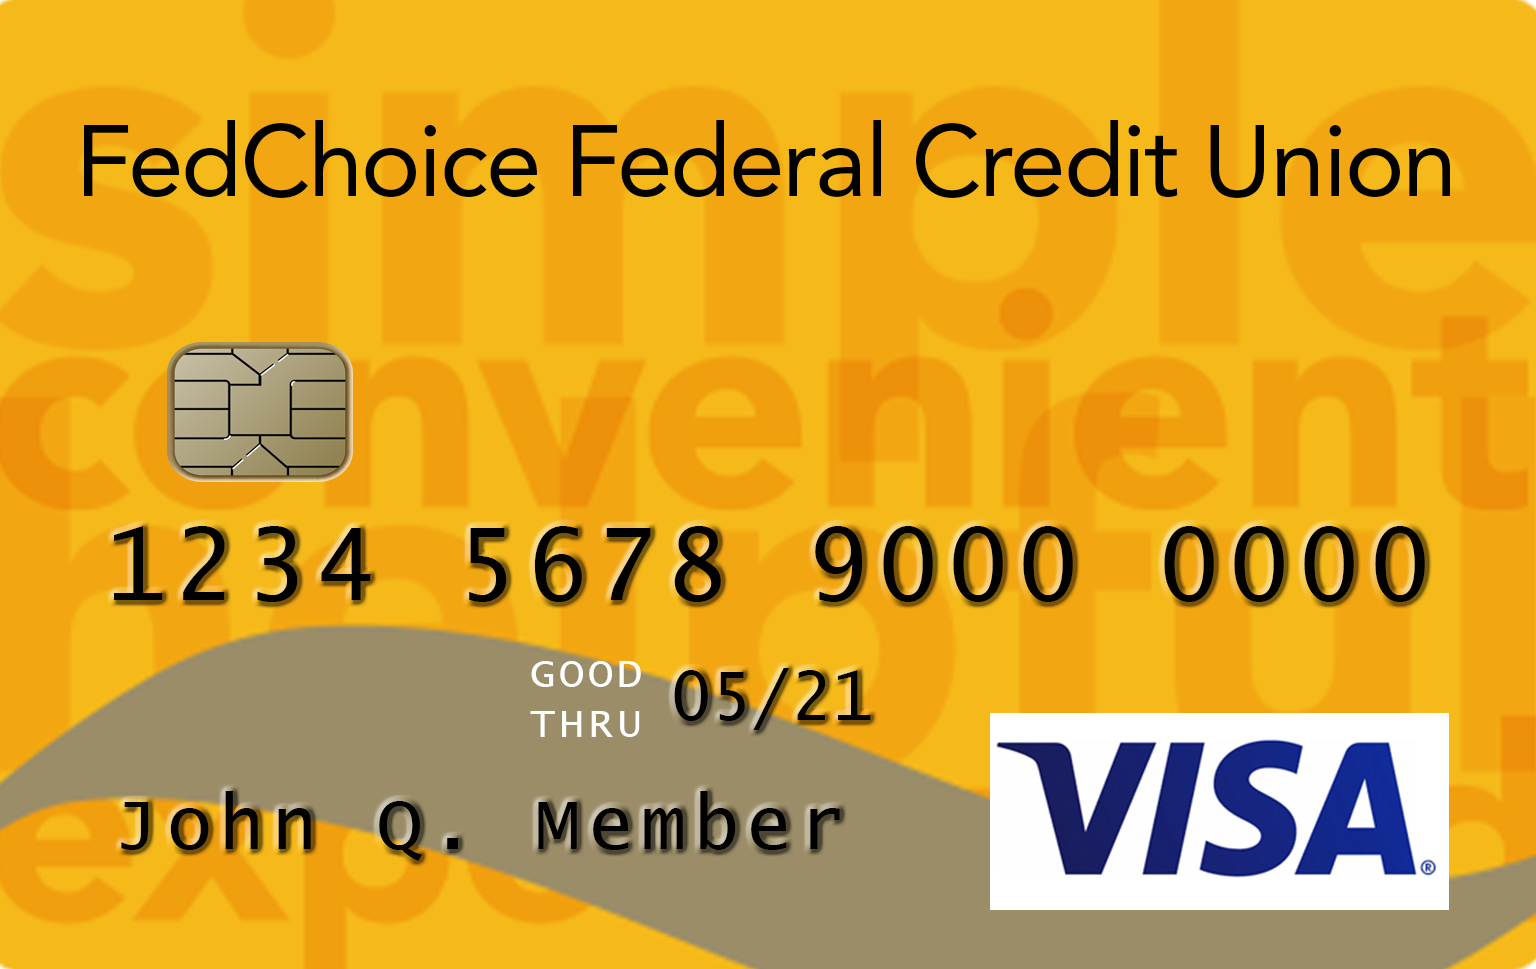 Visa Gold Credit Card